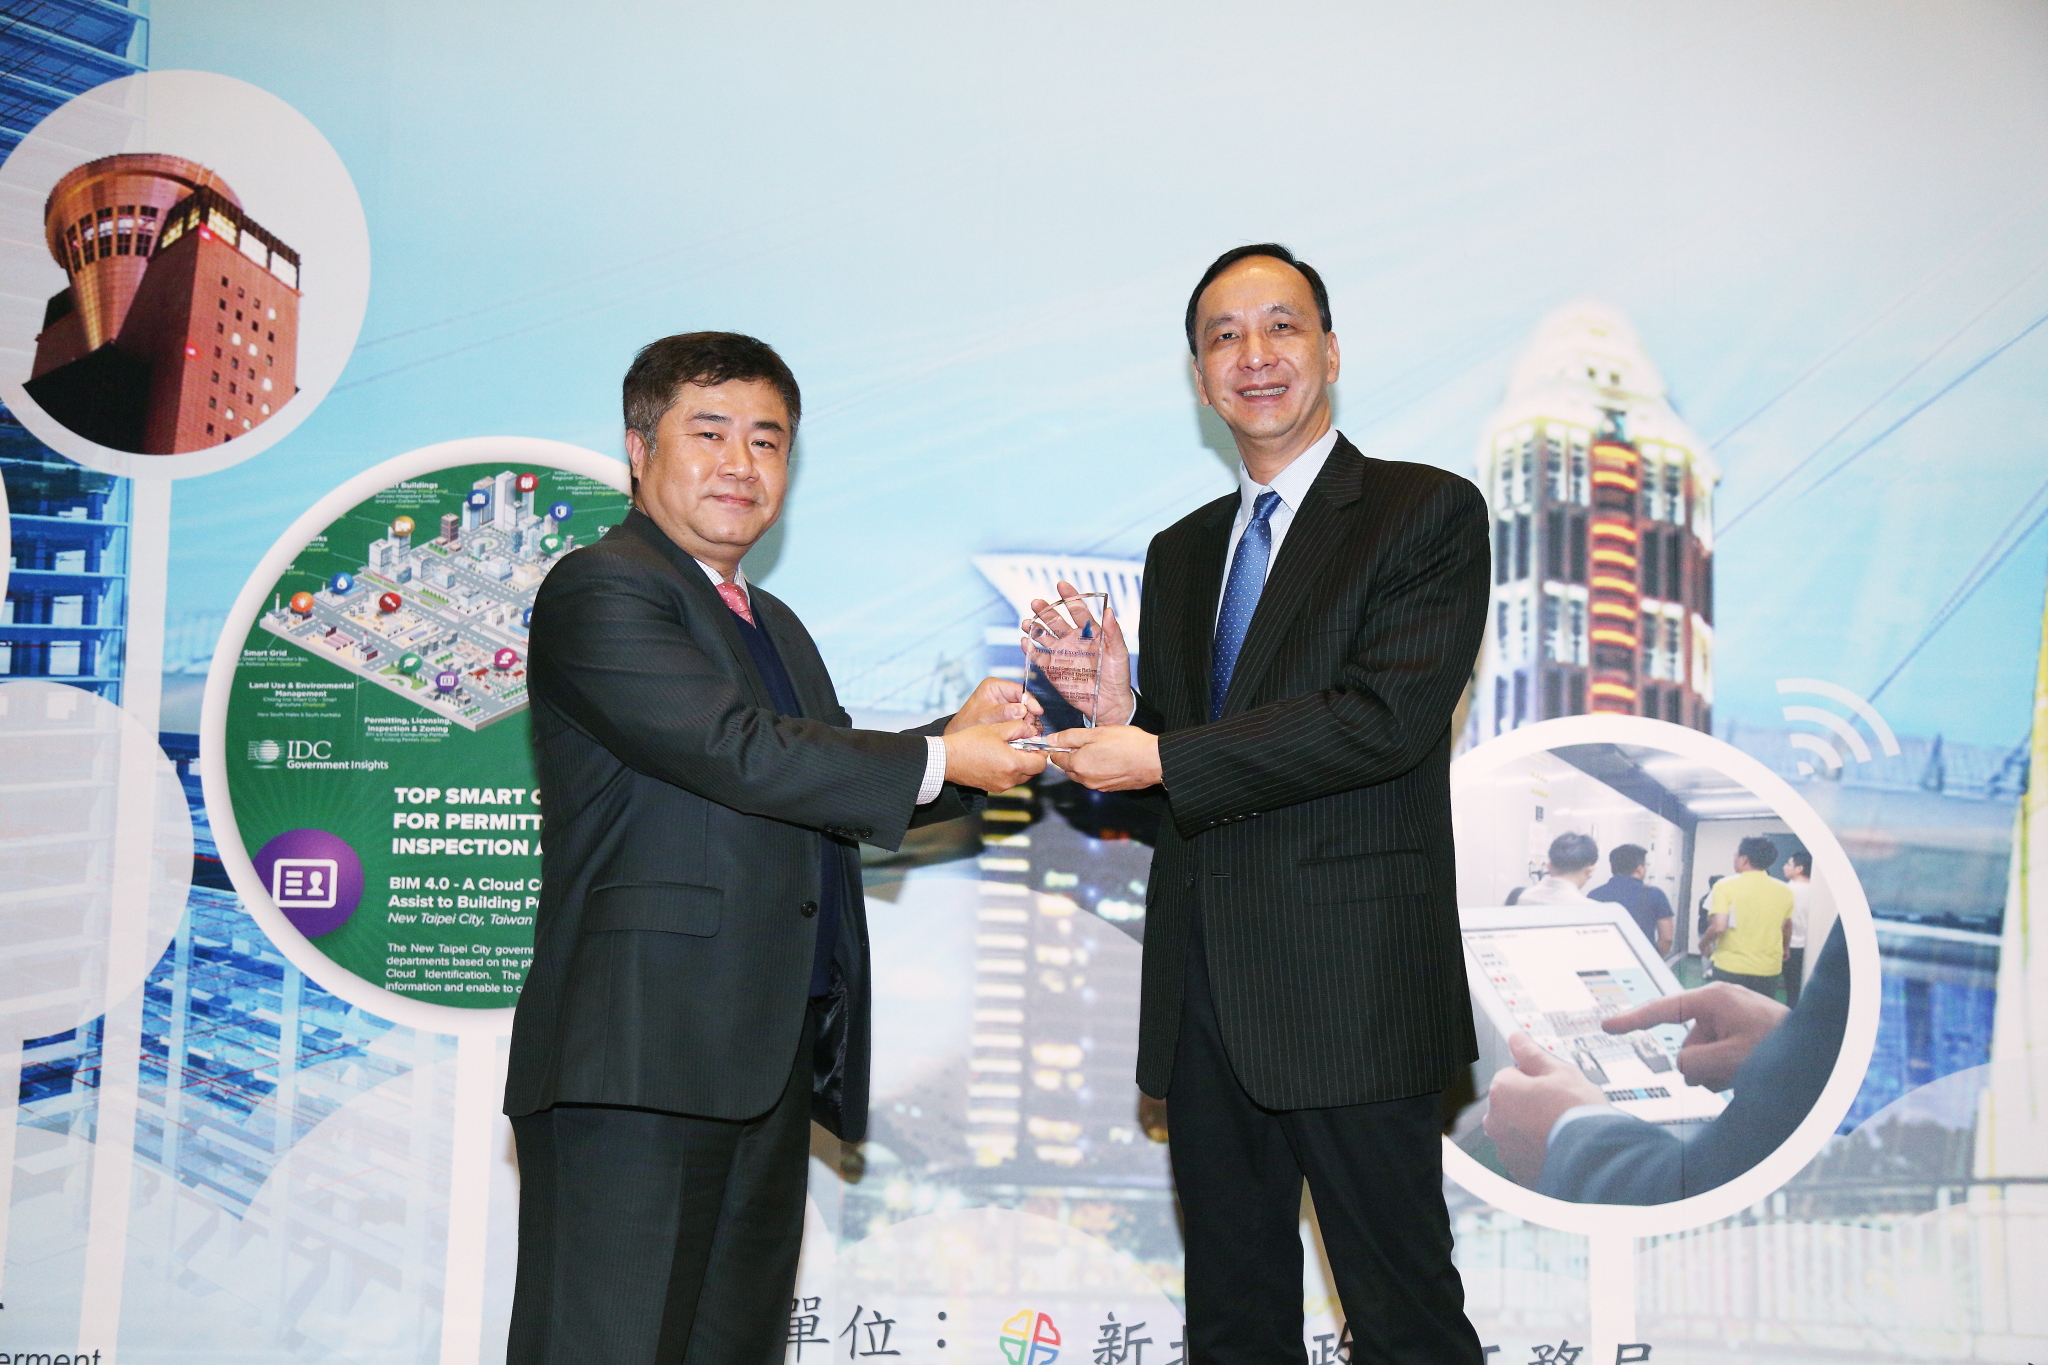 新北市榮獲IDC 亞太智慧城市獎項，是台灣唯一獲獎城市